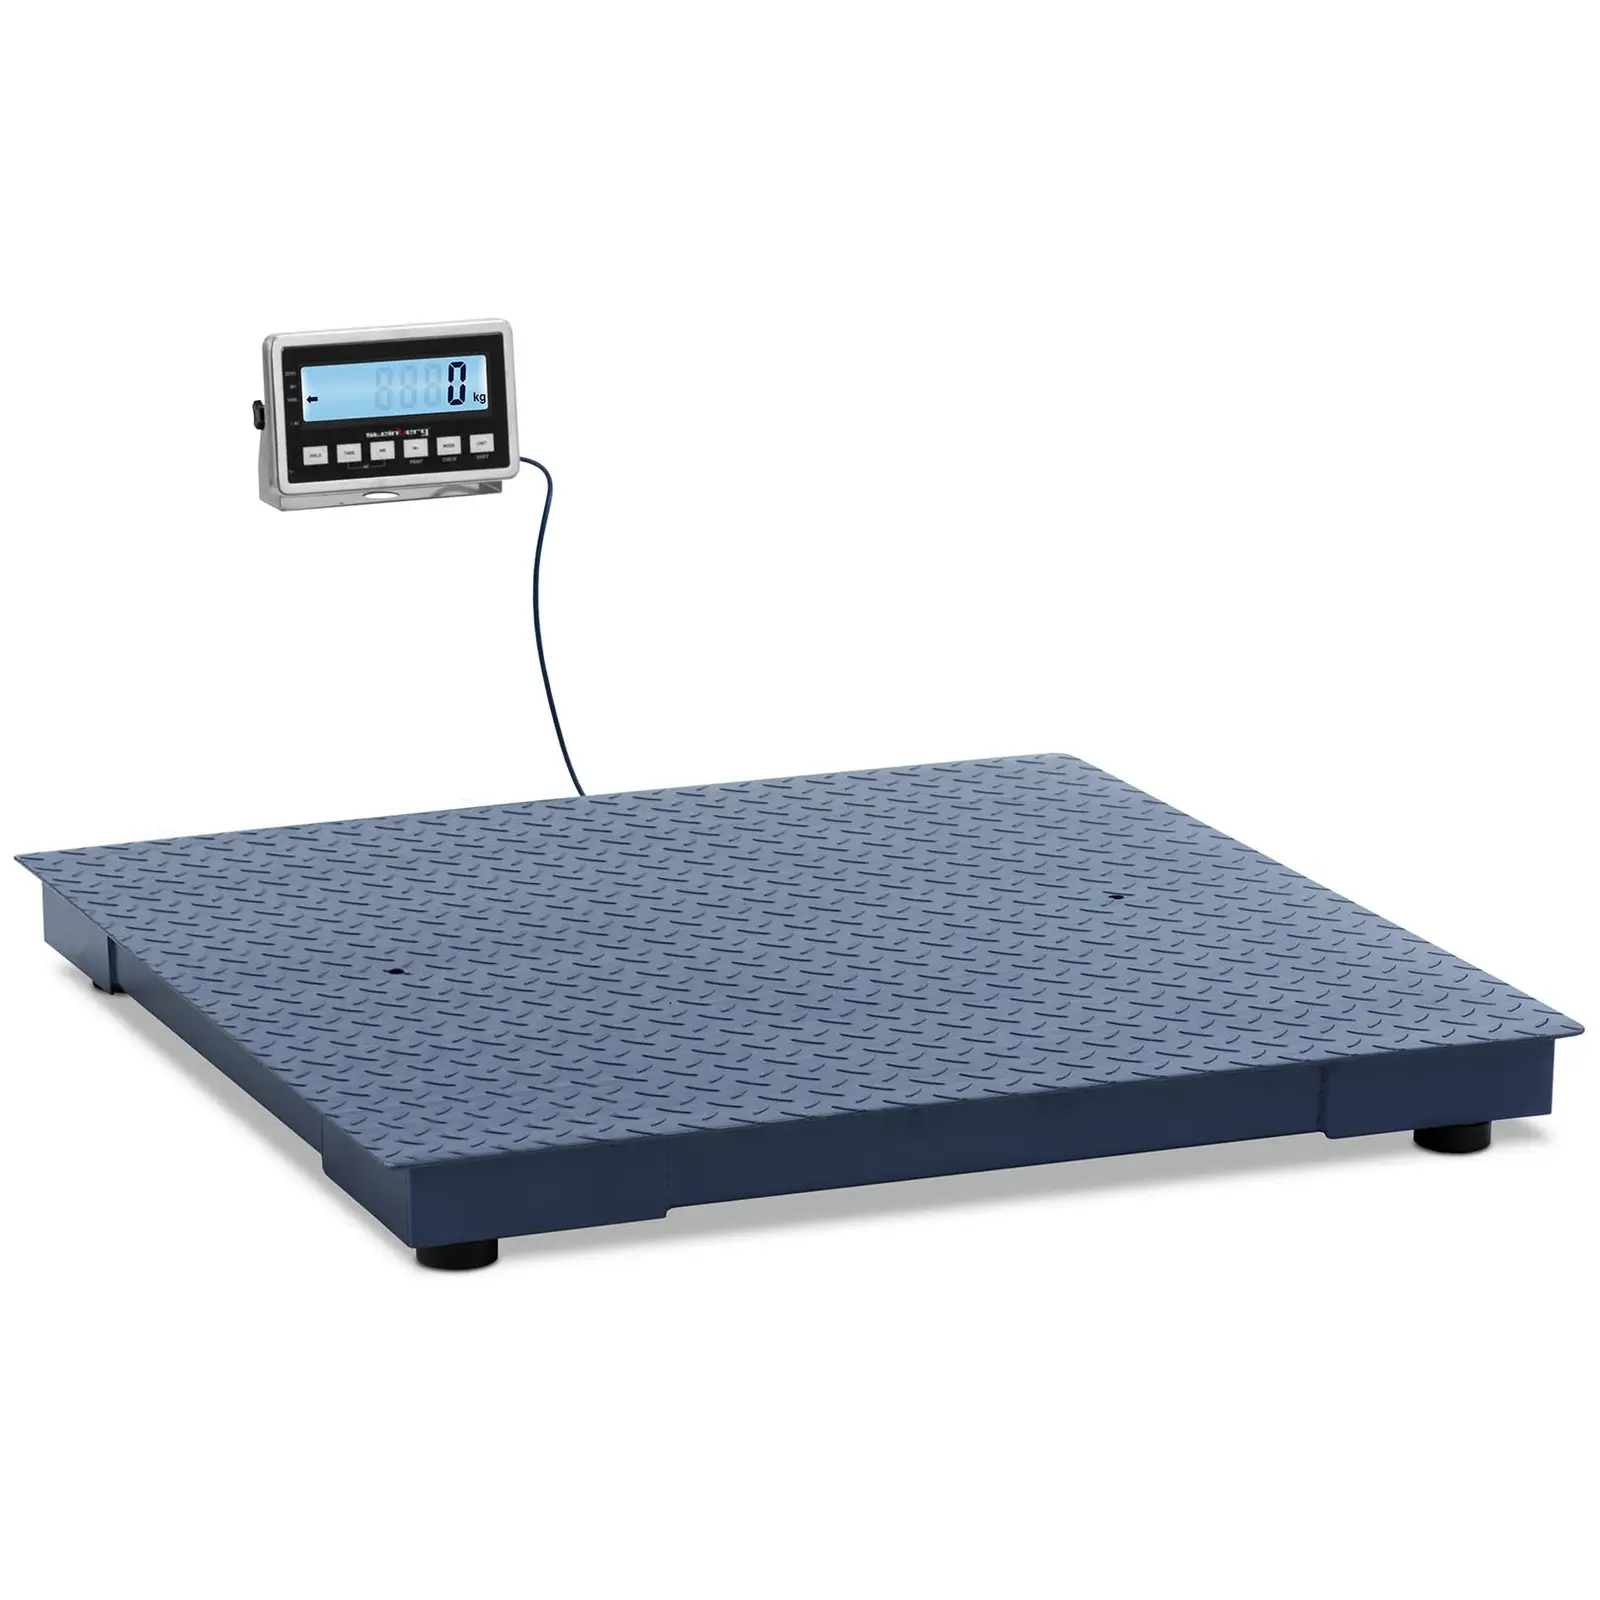 Floor scale - 3000 kg / 1 kg - 1000 x 1000 mm - LCD